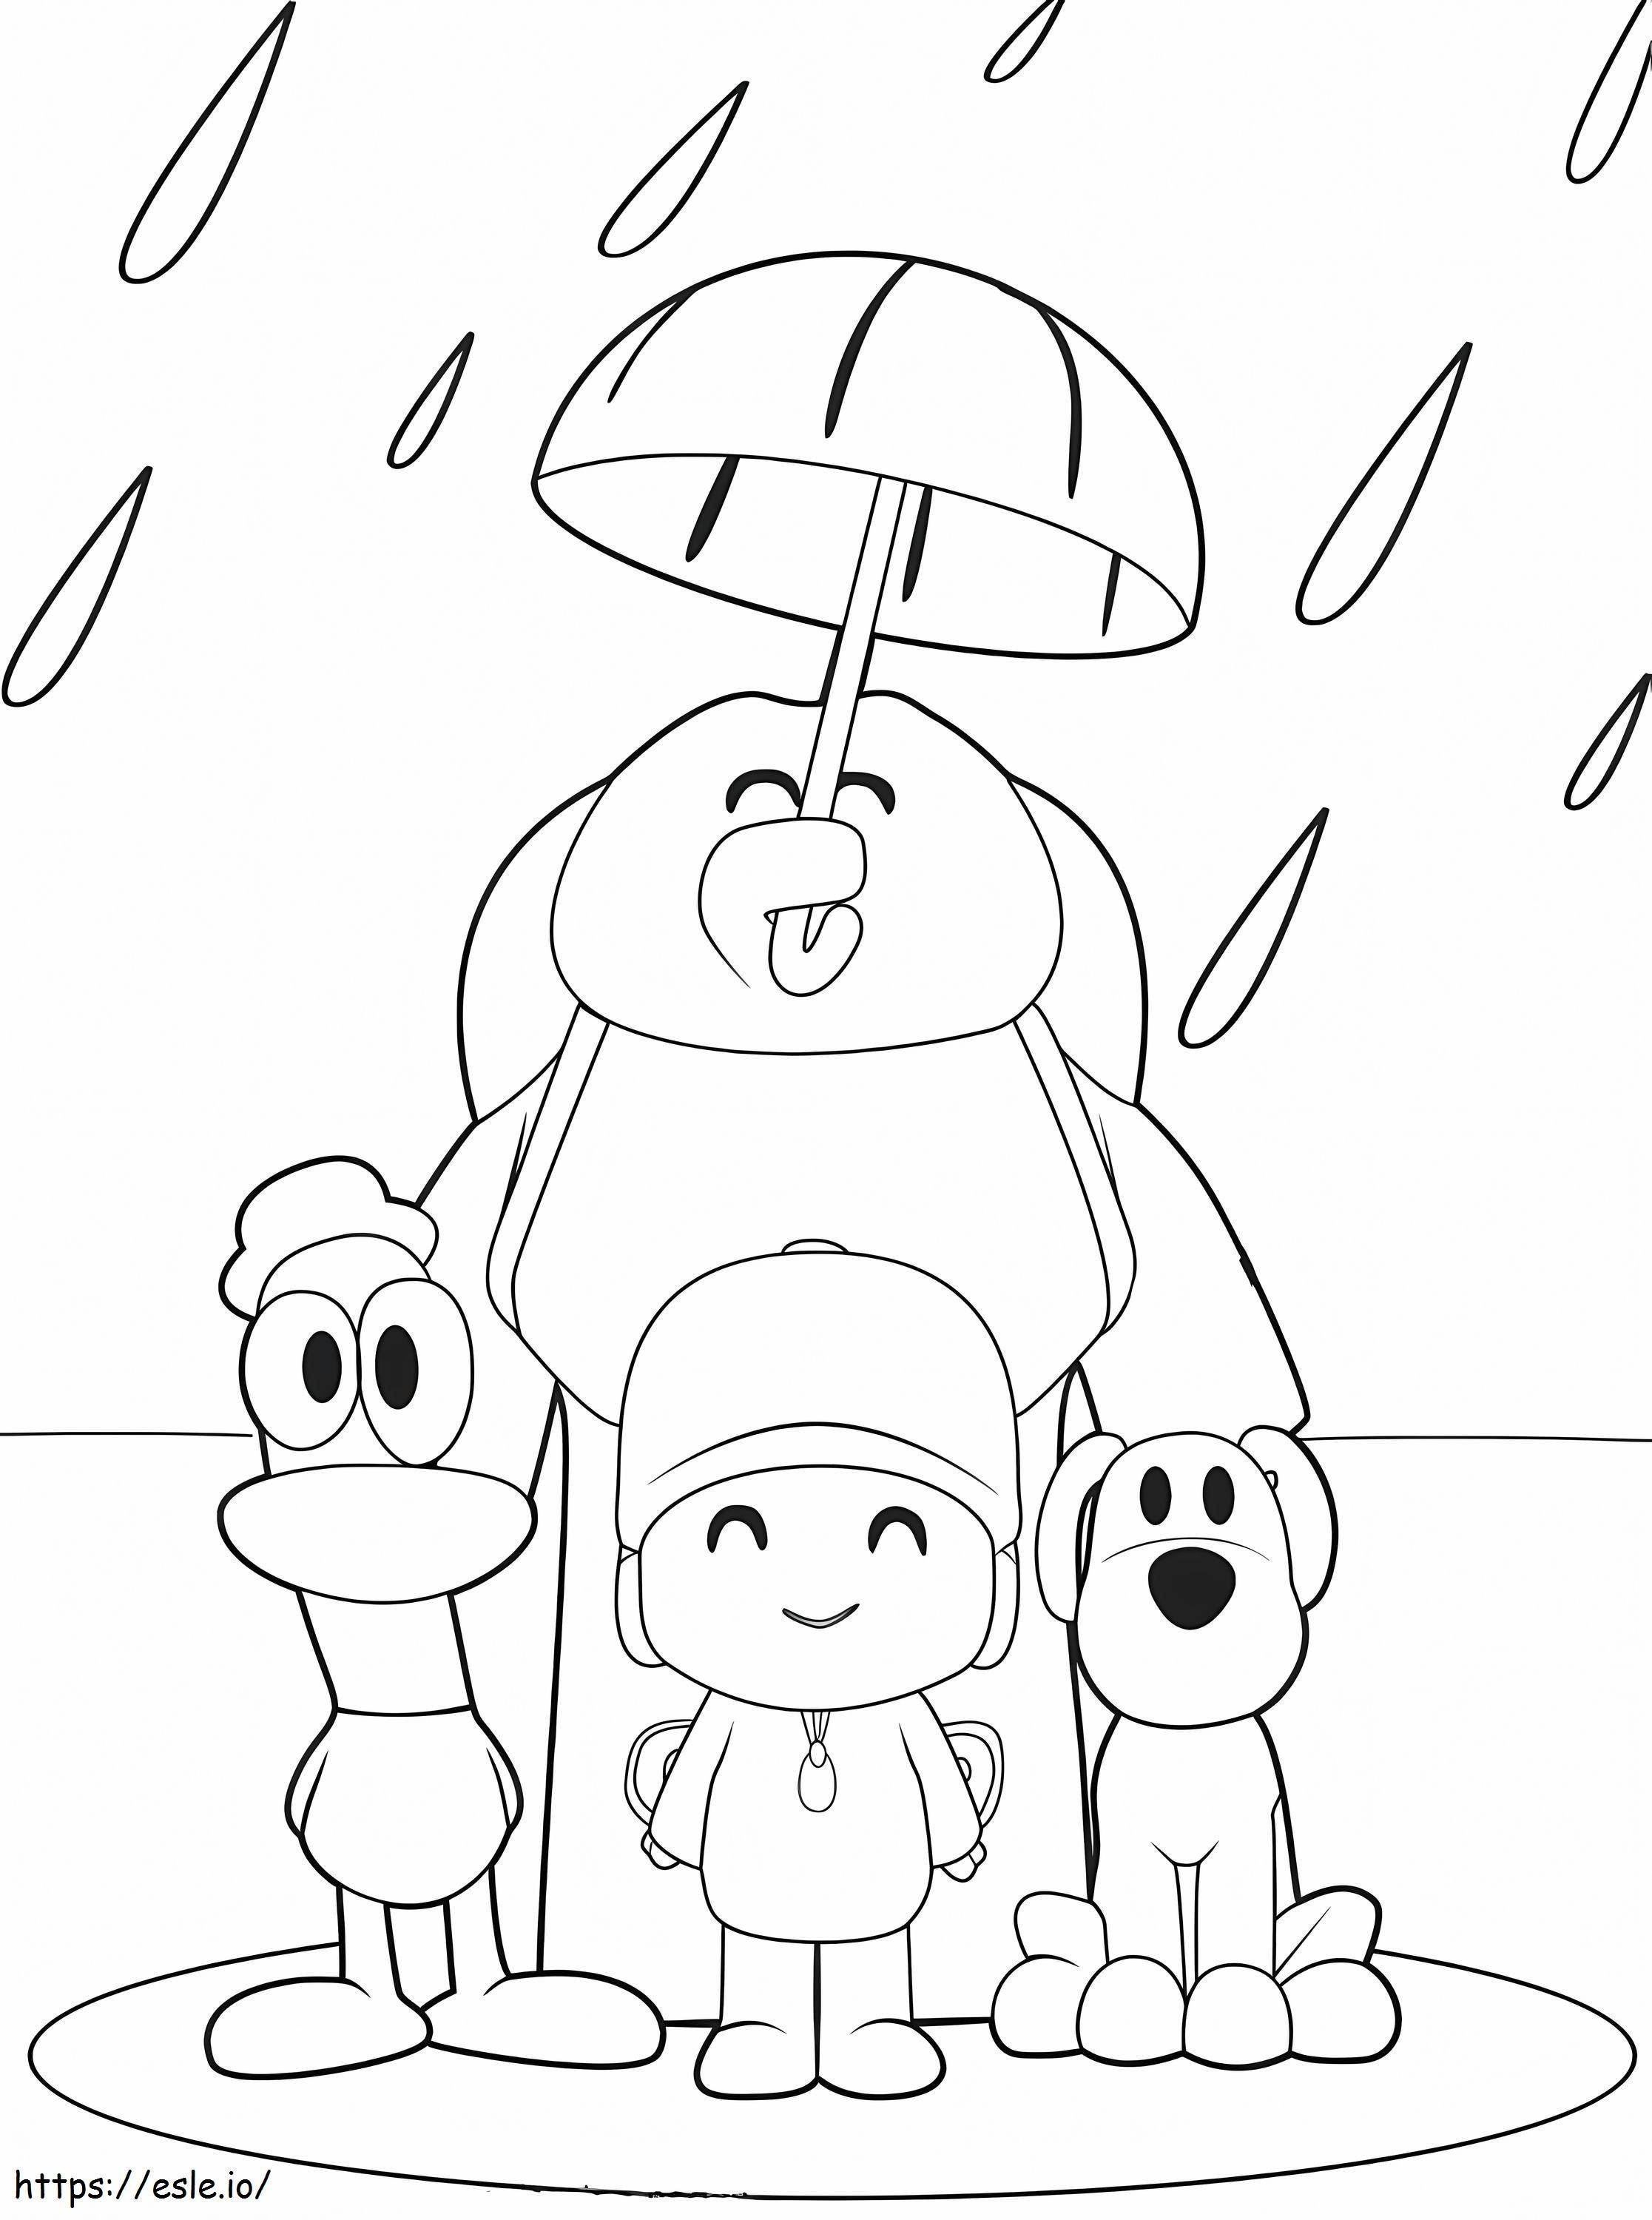 Pocoyo e amigos parados na chuva para colorir